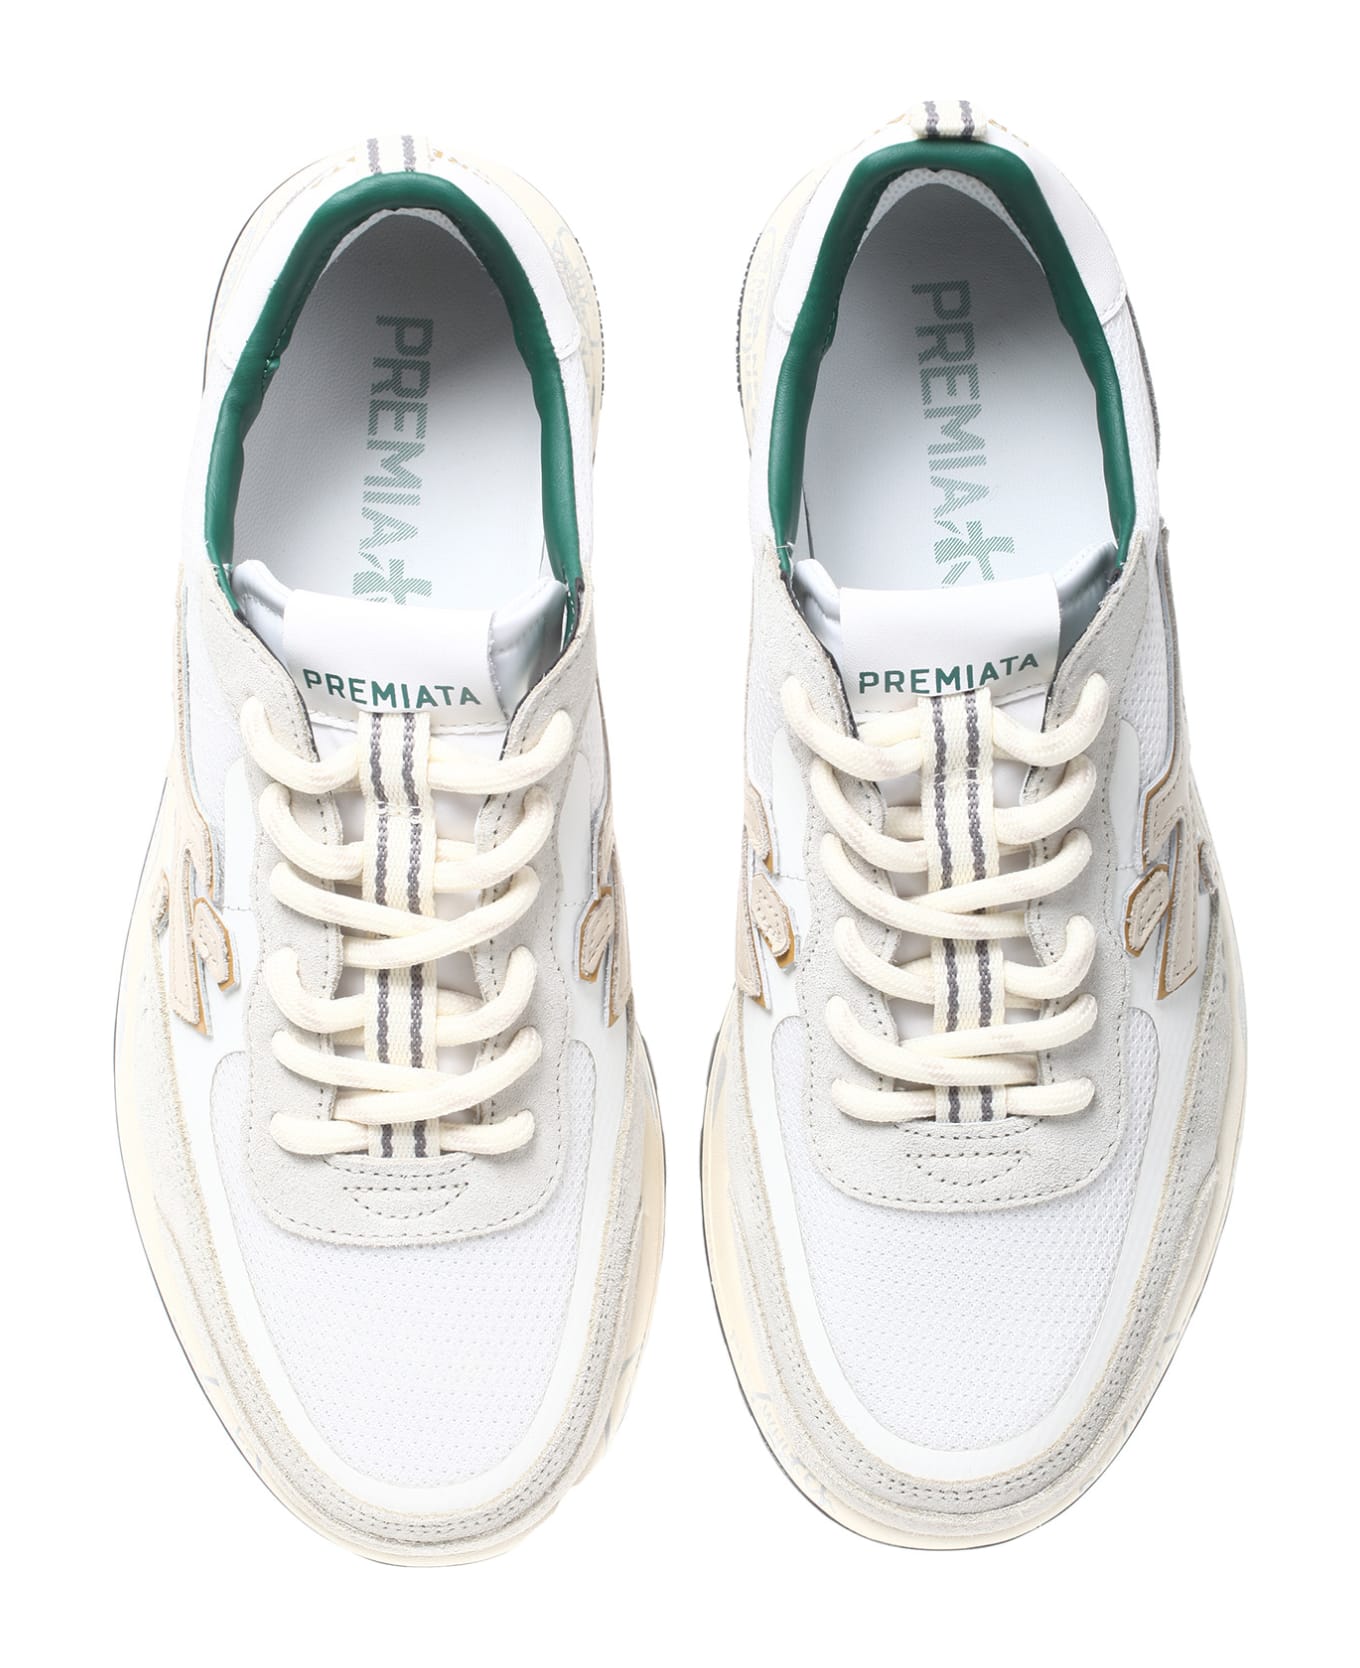 Premiata Flat Shoes White - White スニーカー